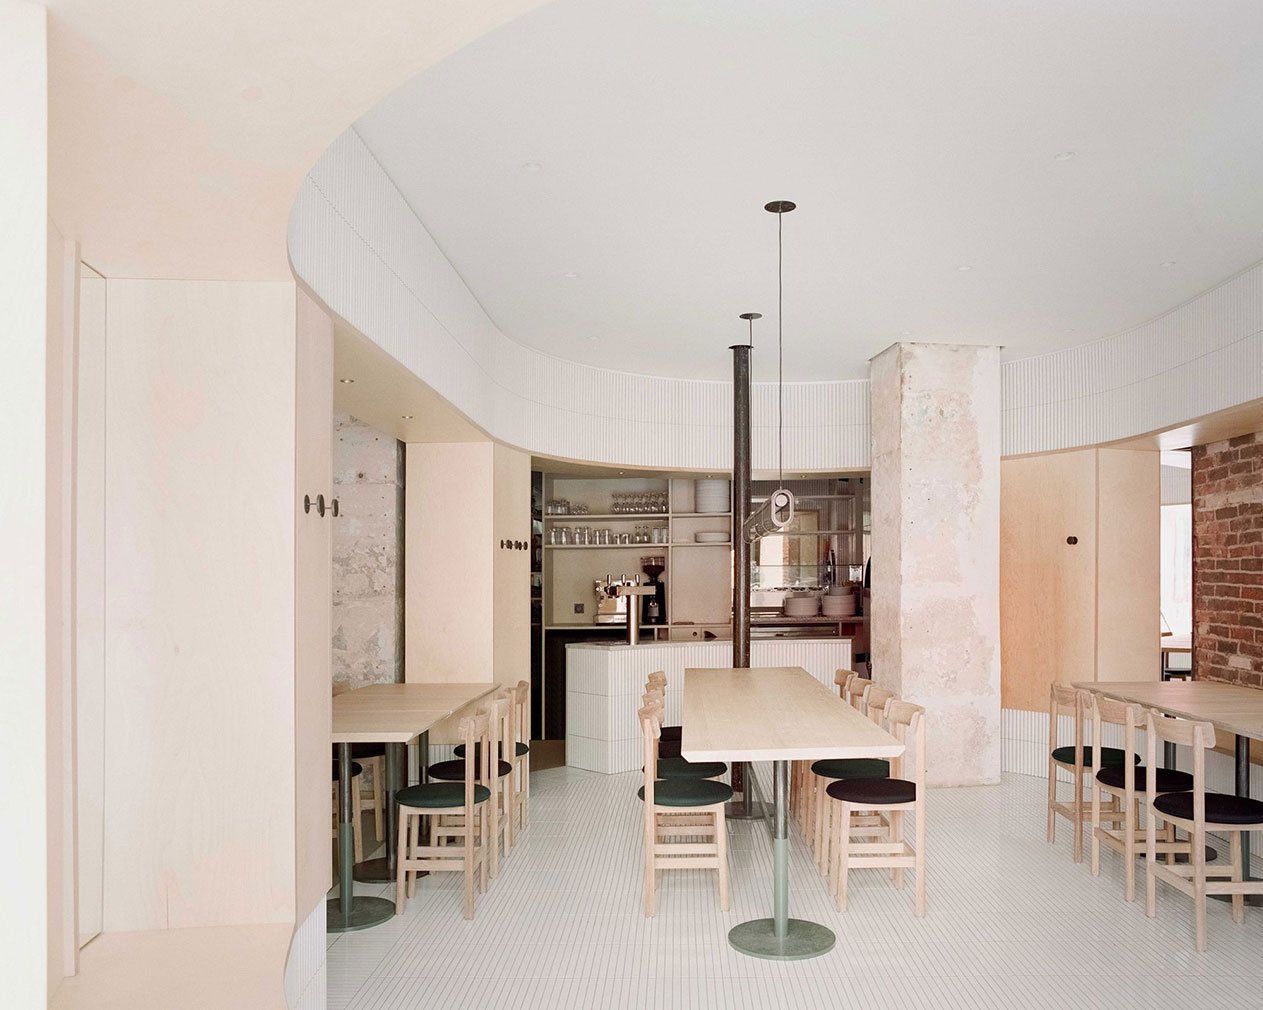 Neri&Hu designed the minimalist Papi restaurant in Paris